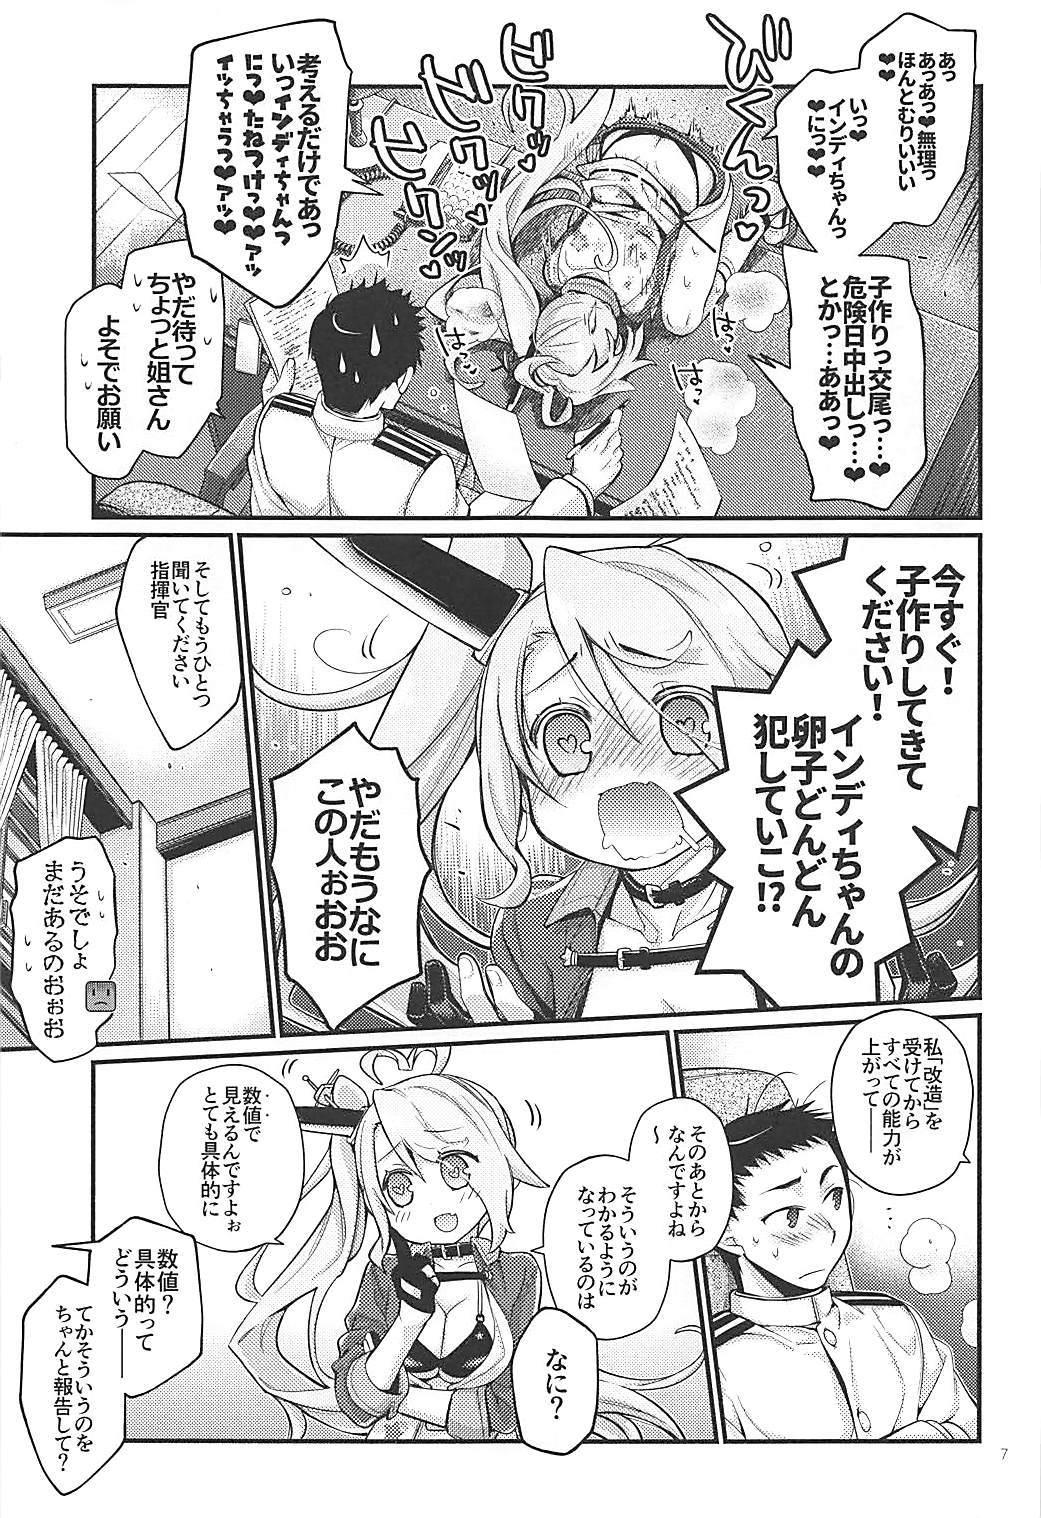 Creamy Uchi no Imouto wa Sekaiichi Kawaiin desu kedo! 2 - Azur lane Paja - Page 6